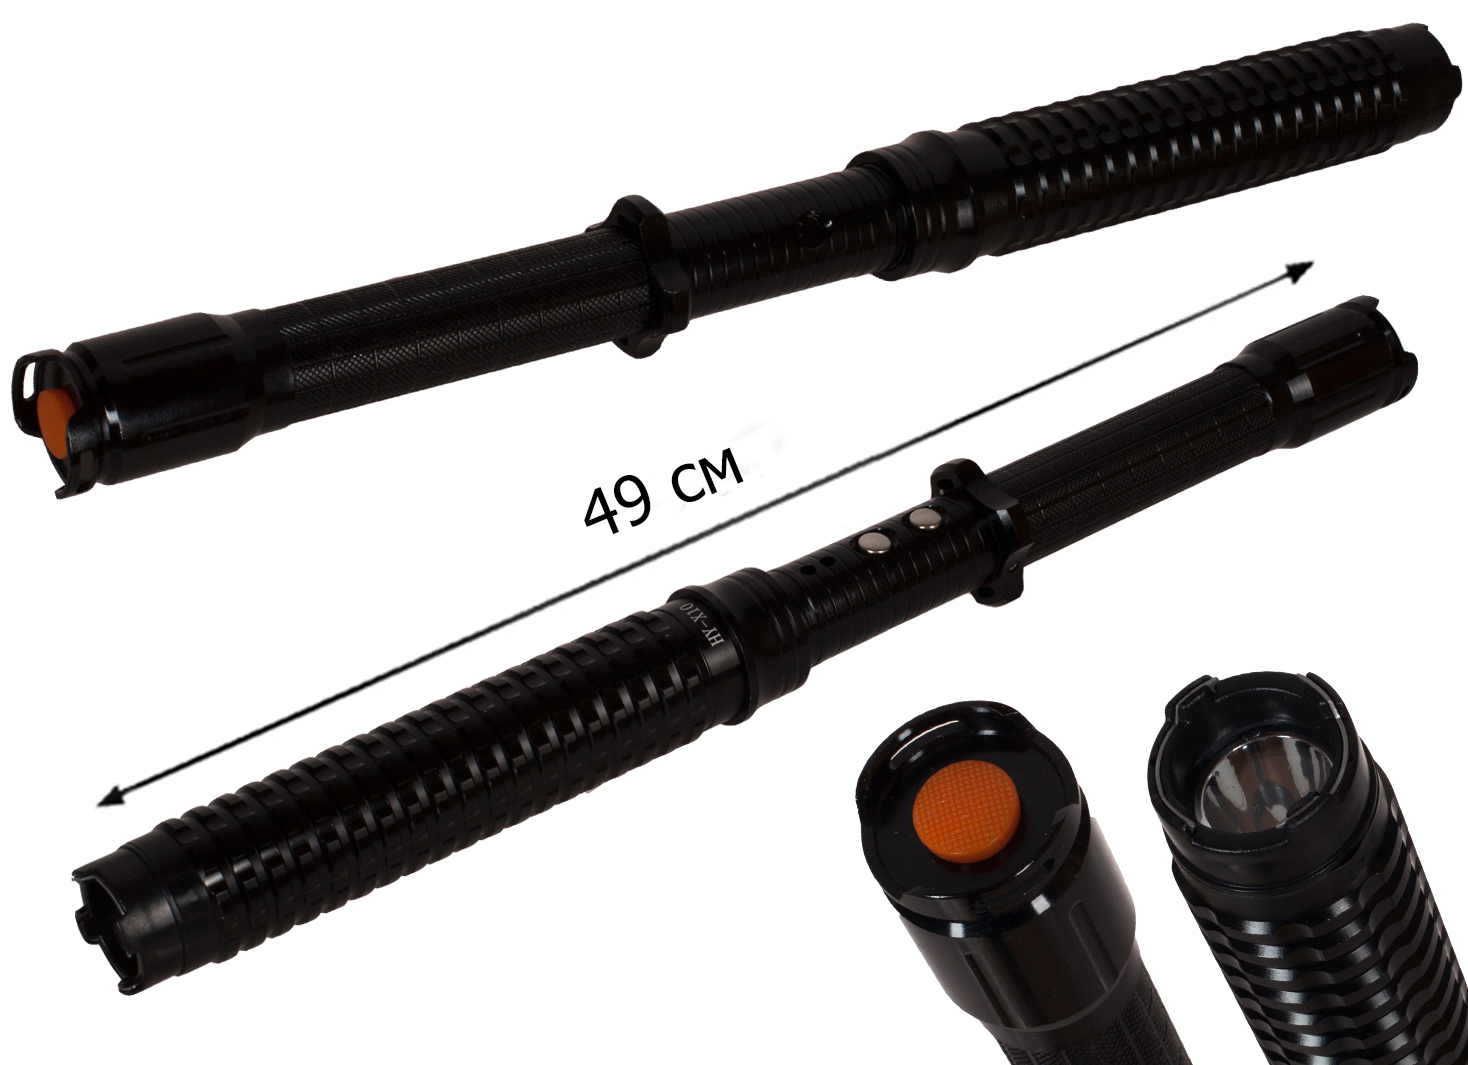 Раскладная телескопическая палка-дубинка для самообороны, в чехле оптом